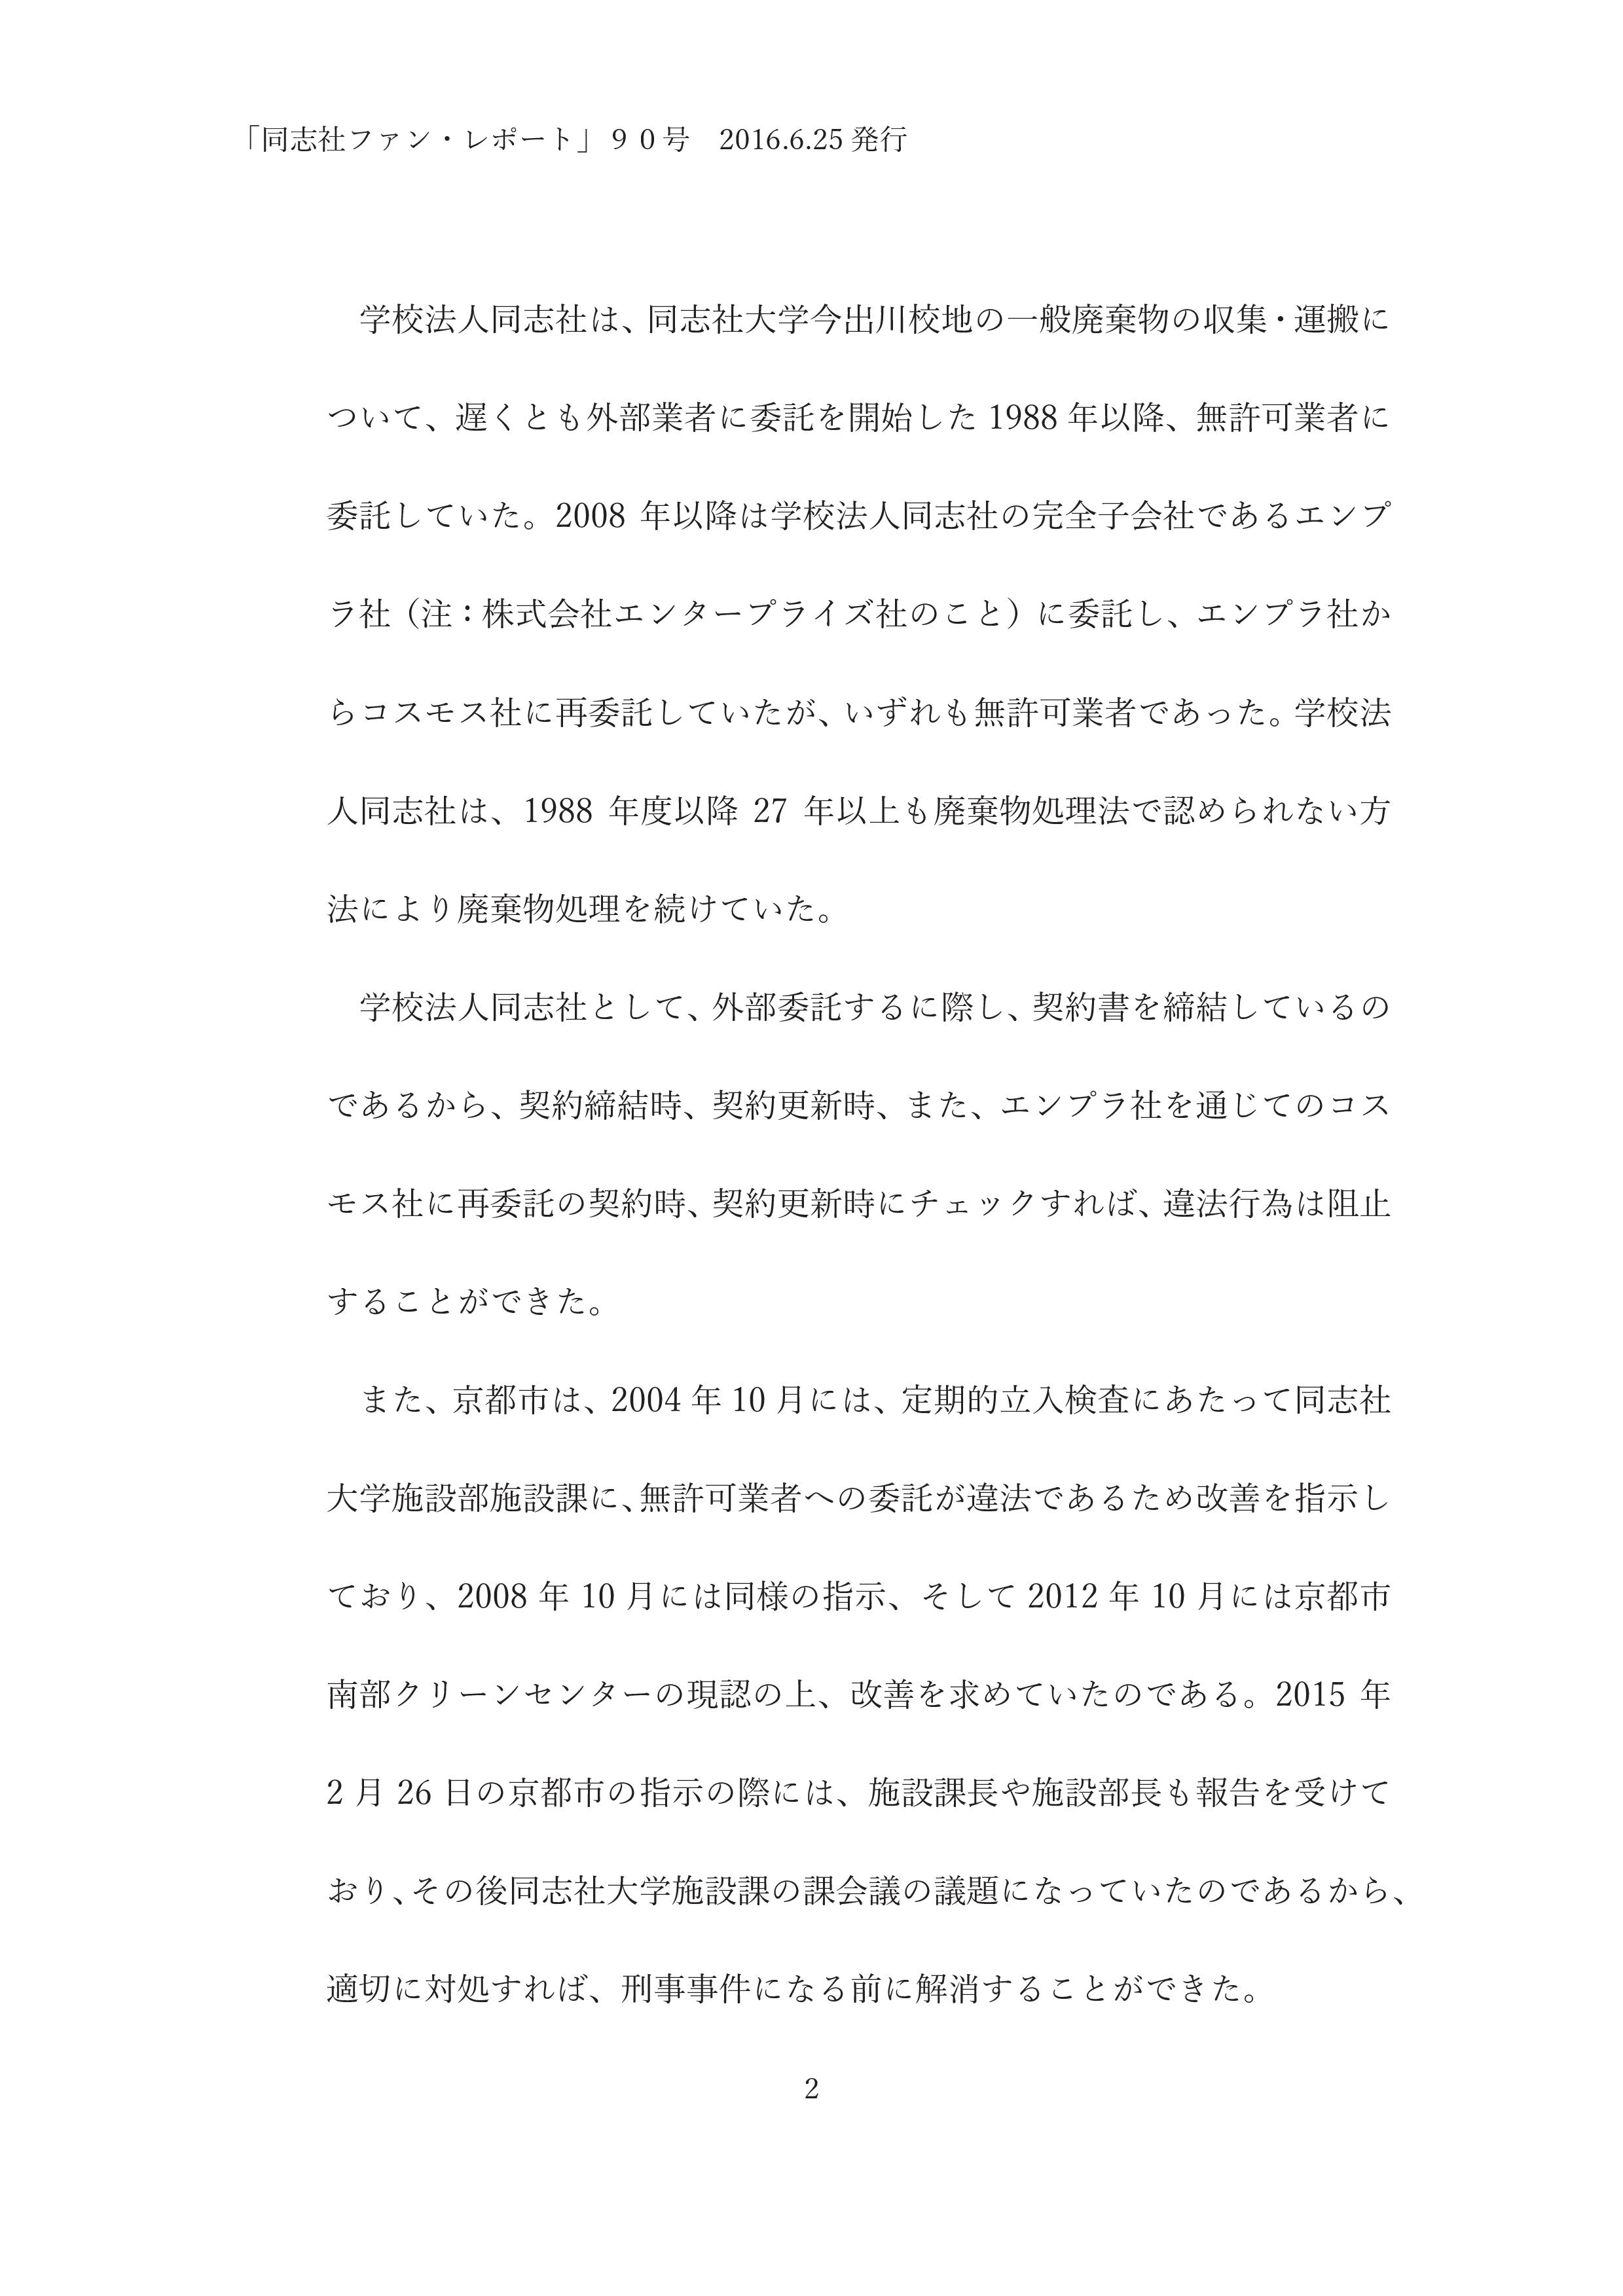 ９０．不祥事のお詫びと第三者調査委員会の報告・-002.jpg